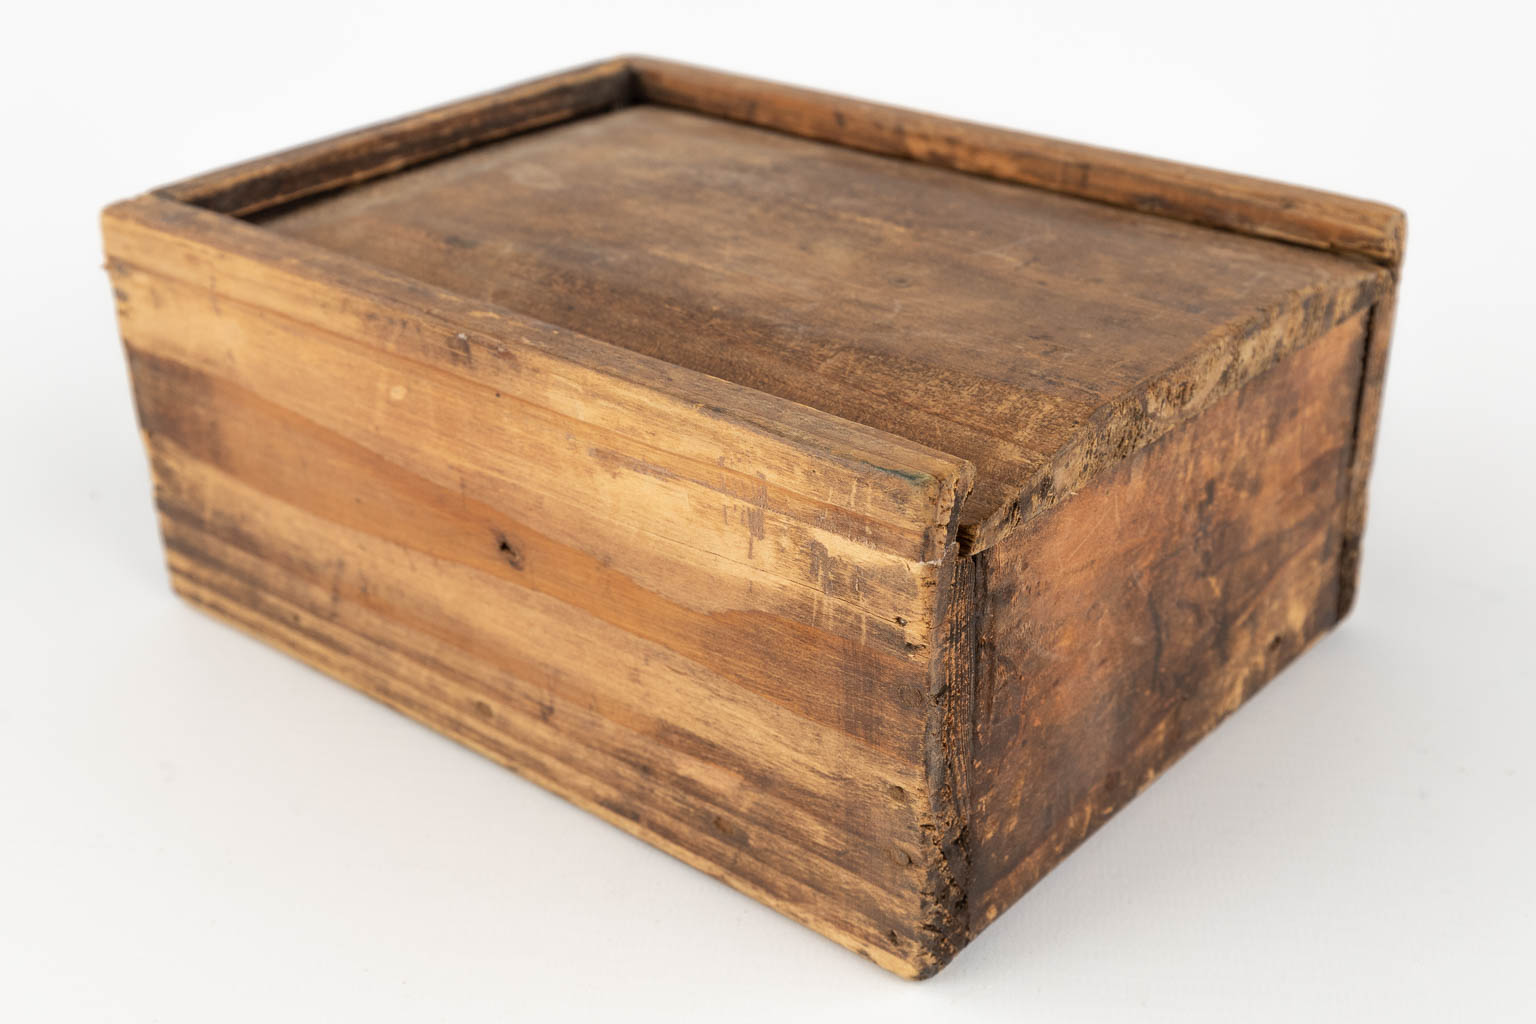 Een antiek spel 'Mahjong', been en hout. In een kist. (D:14 x W:19 x H:8 cm)